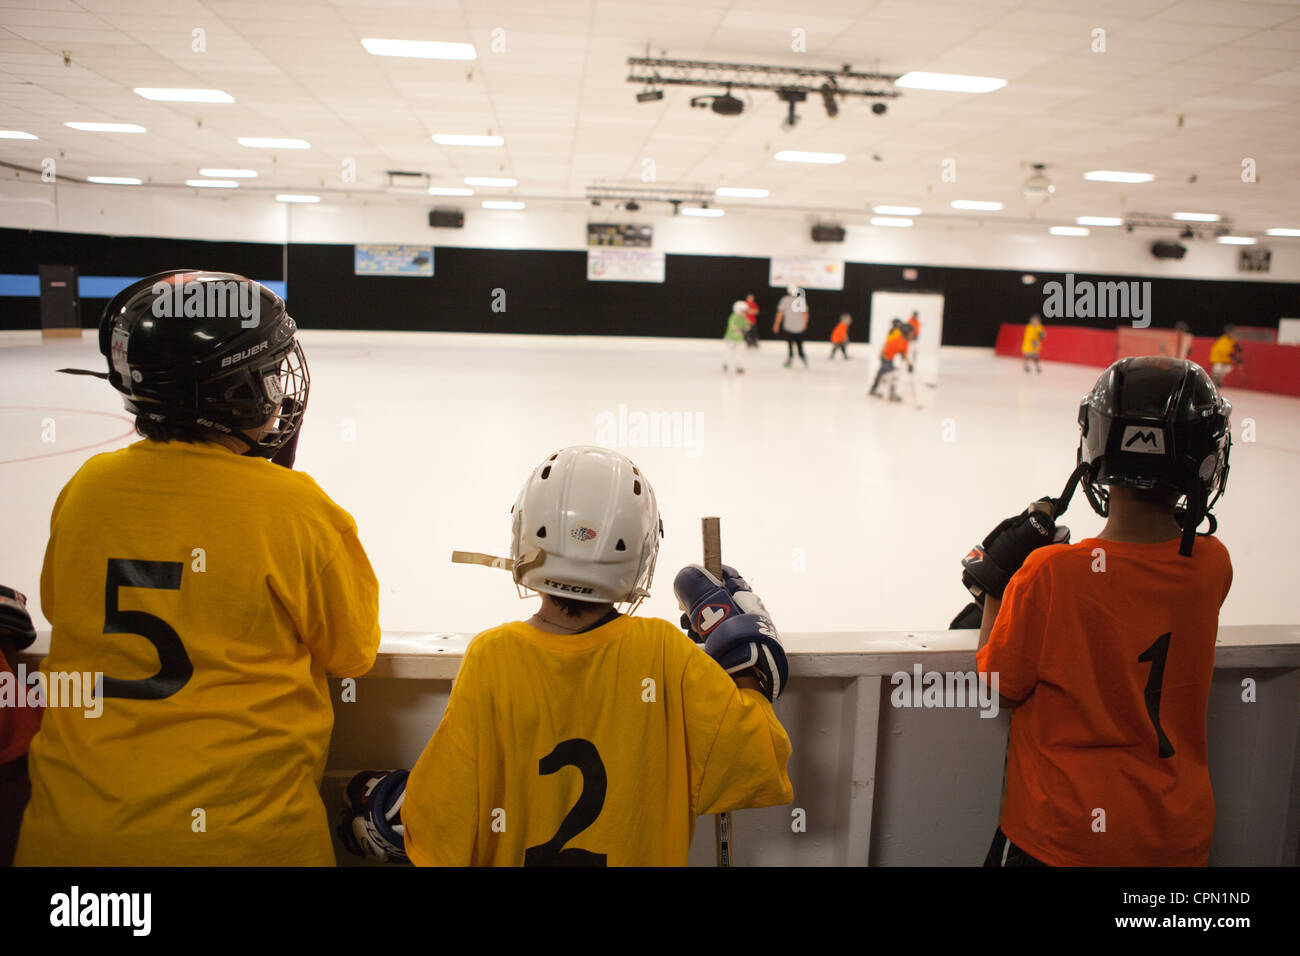 Junge Hockeyspieler beobachten Teamkollegen auf der Eisbahn. Stockfoto